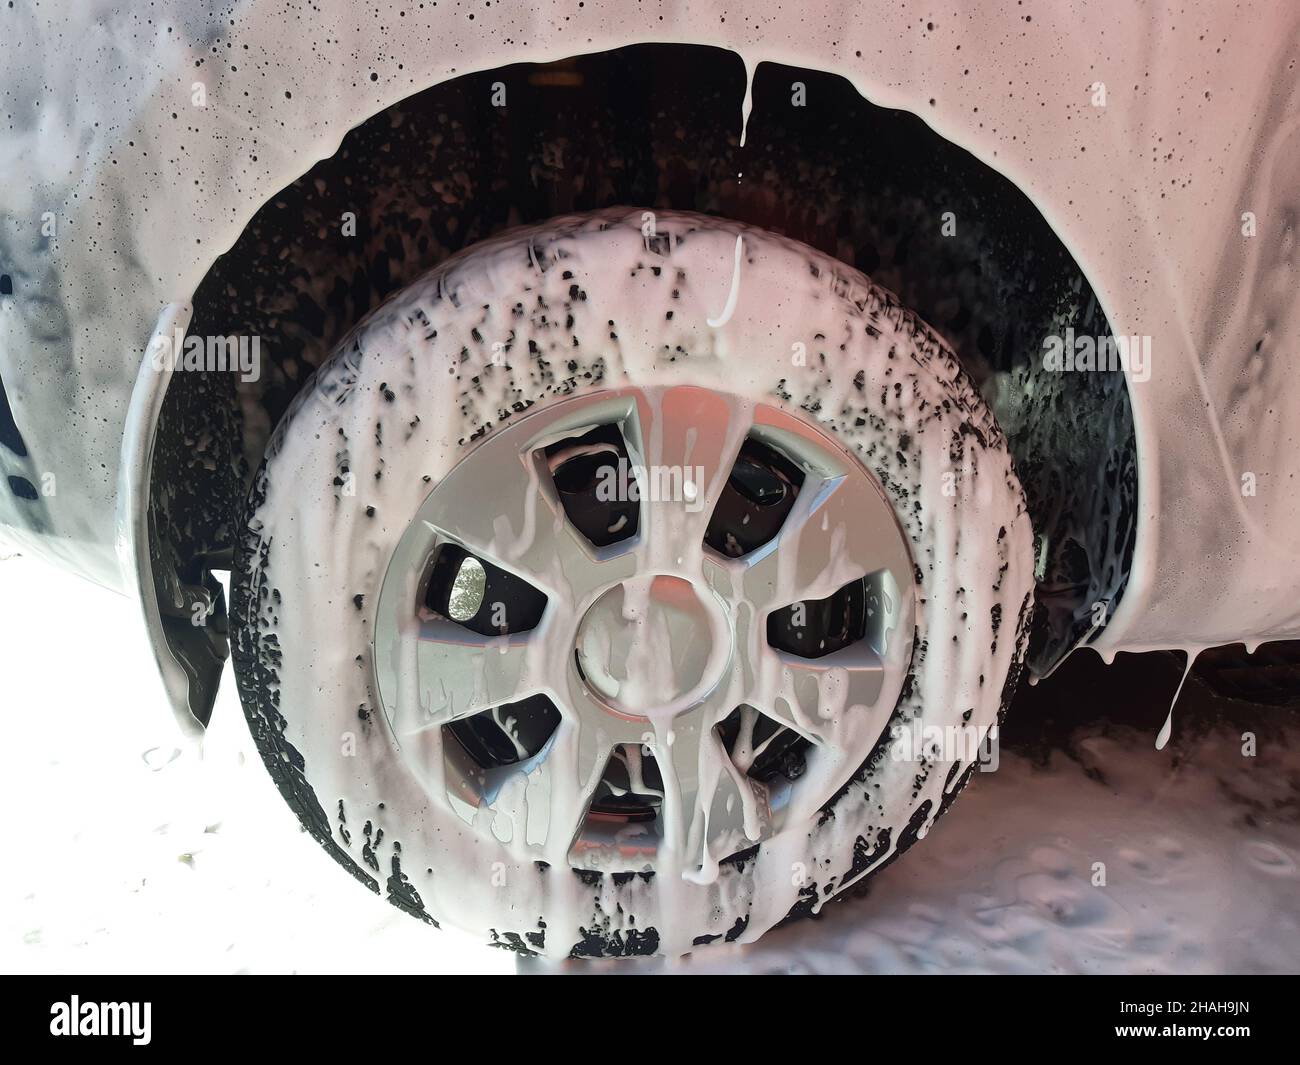 La roue de la voiture et une partie de l'aile de la voiture sont entièrement recouvertes de mousse blanche au lavage de voiture préparé pour le lavage à l'eau.F Banque D'Images